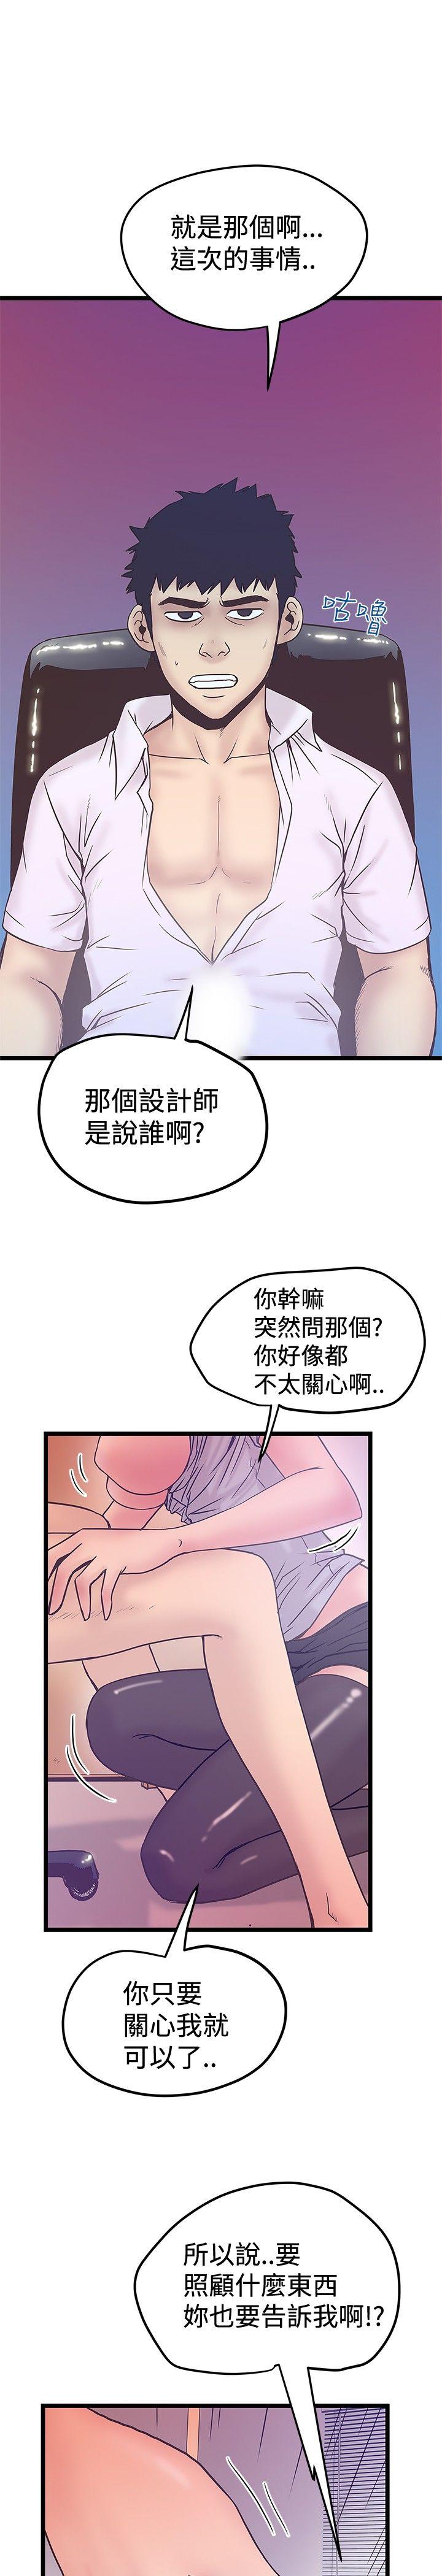 韩国污漫画 想像狂熱 第41话 13